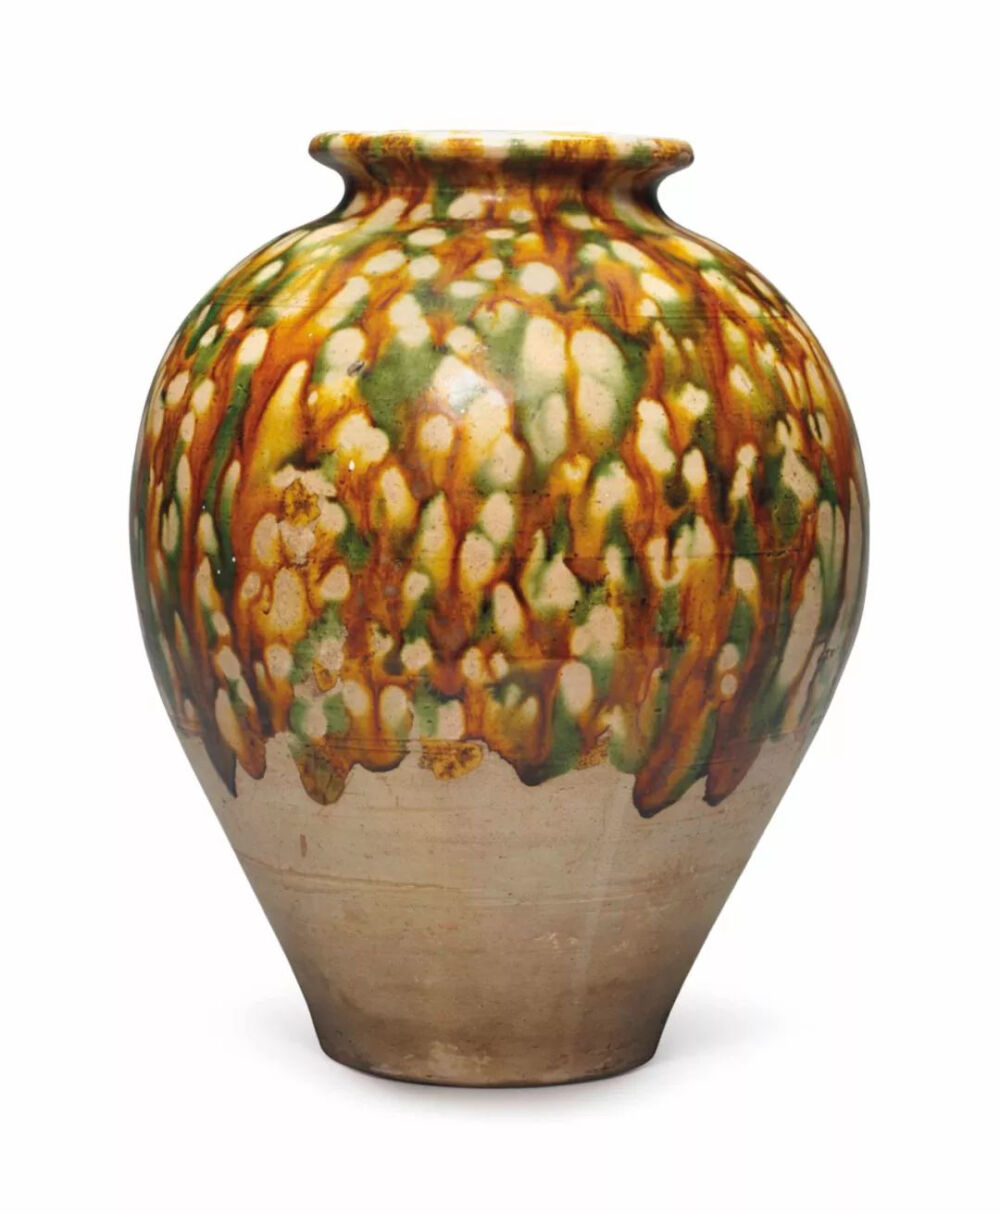 艾比收藏的唐三彩陶罐2018年拍出21250美元